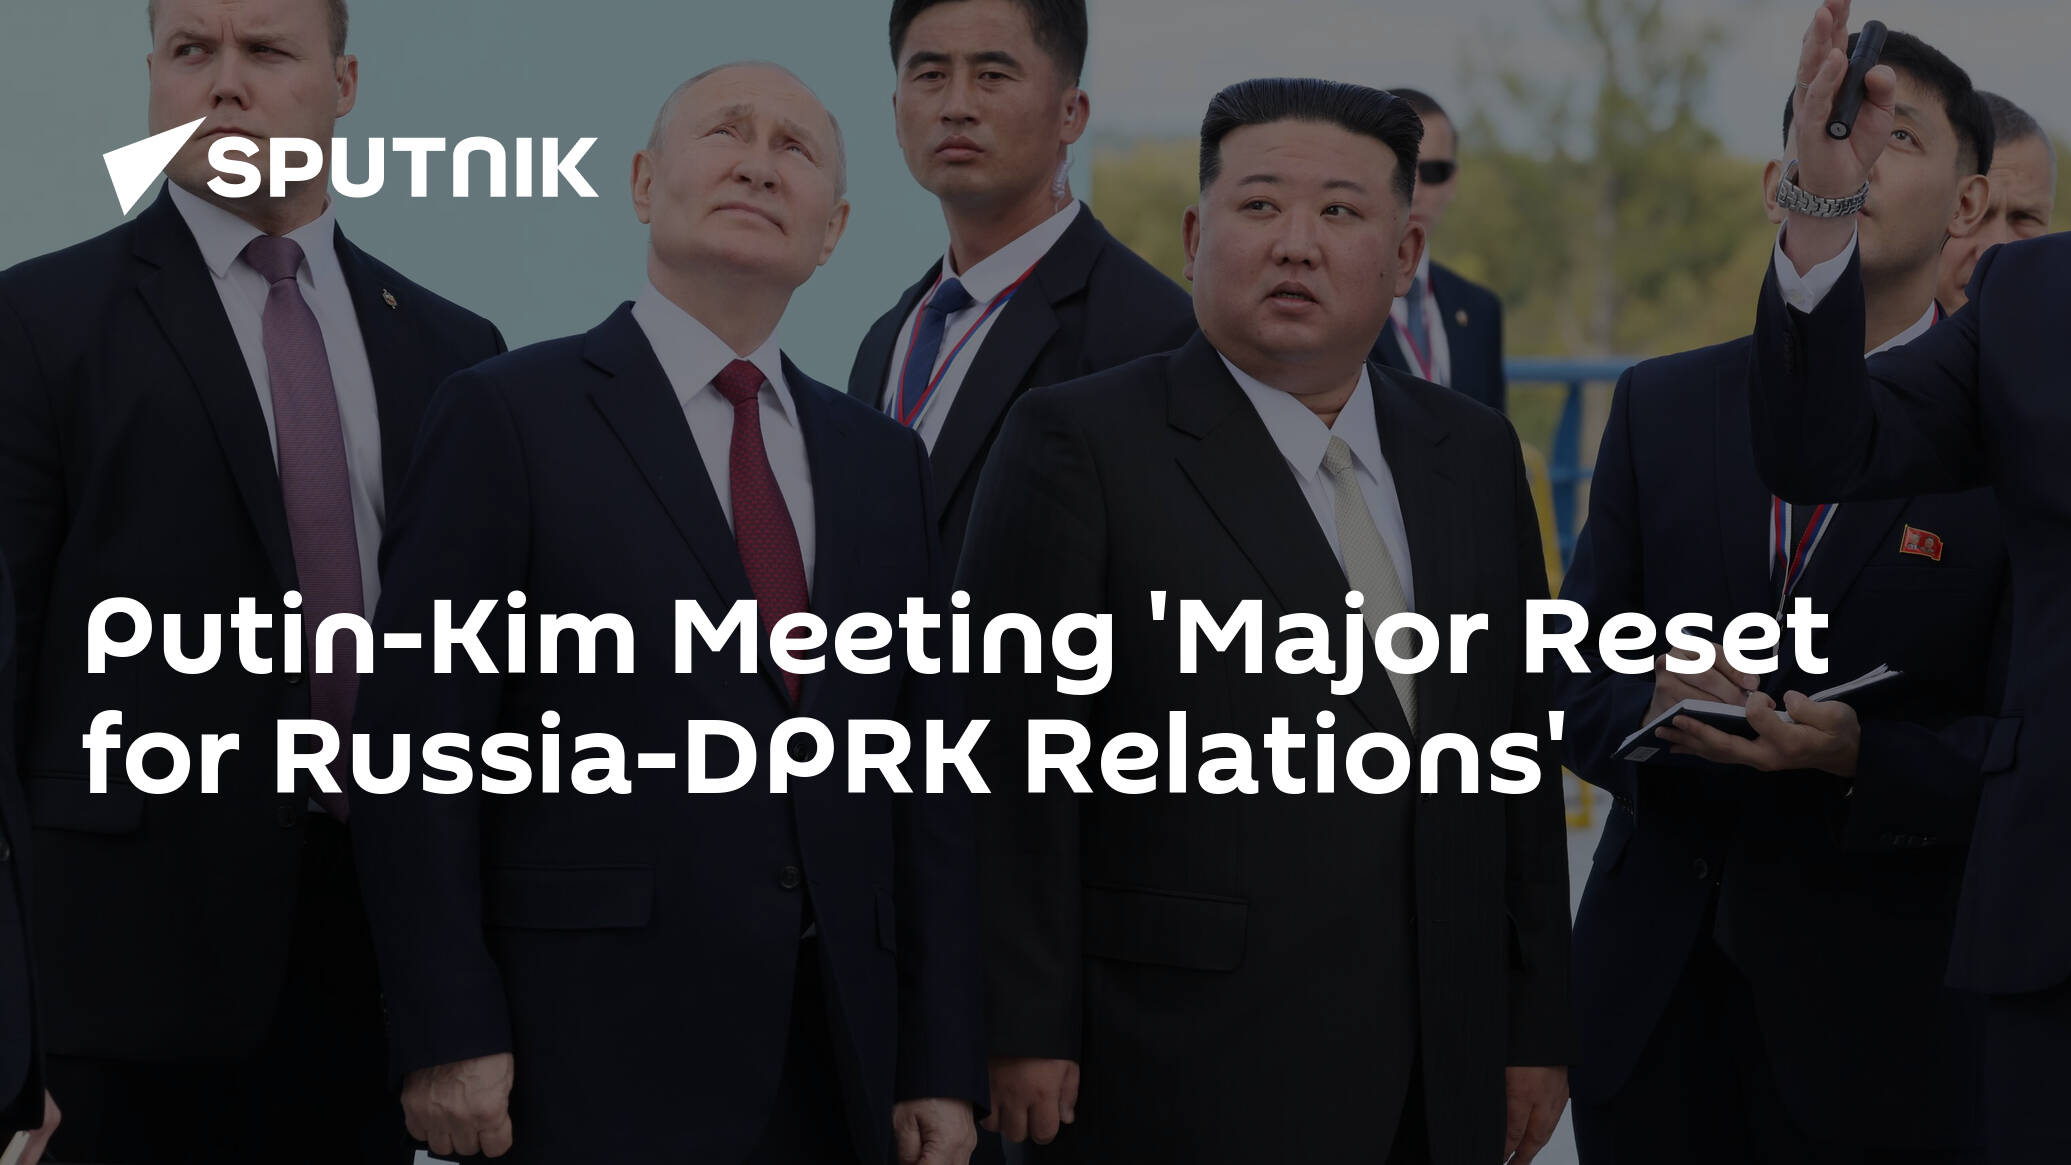 Putin-Kim Meeting 'Major Reset for Russia-DPRK Relations'